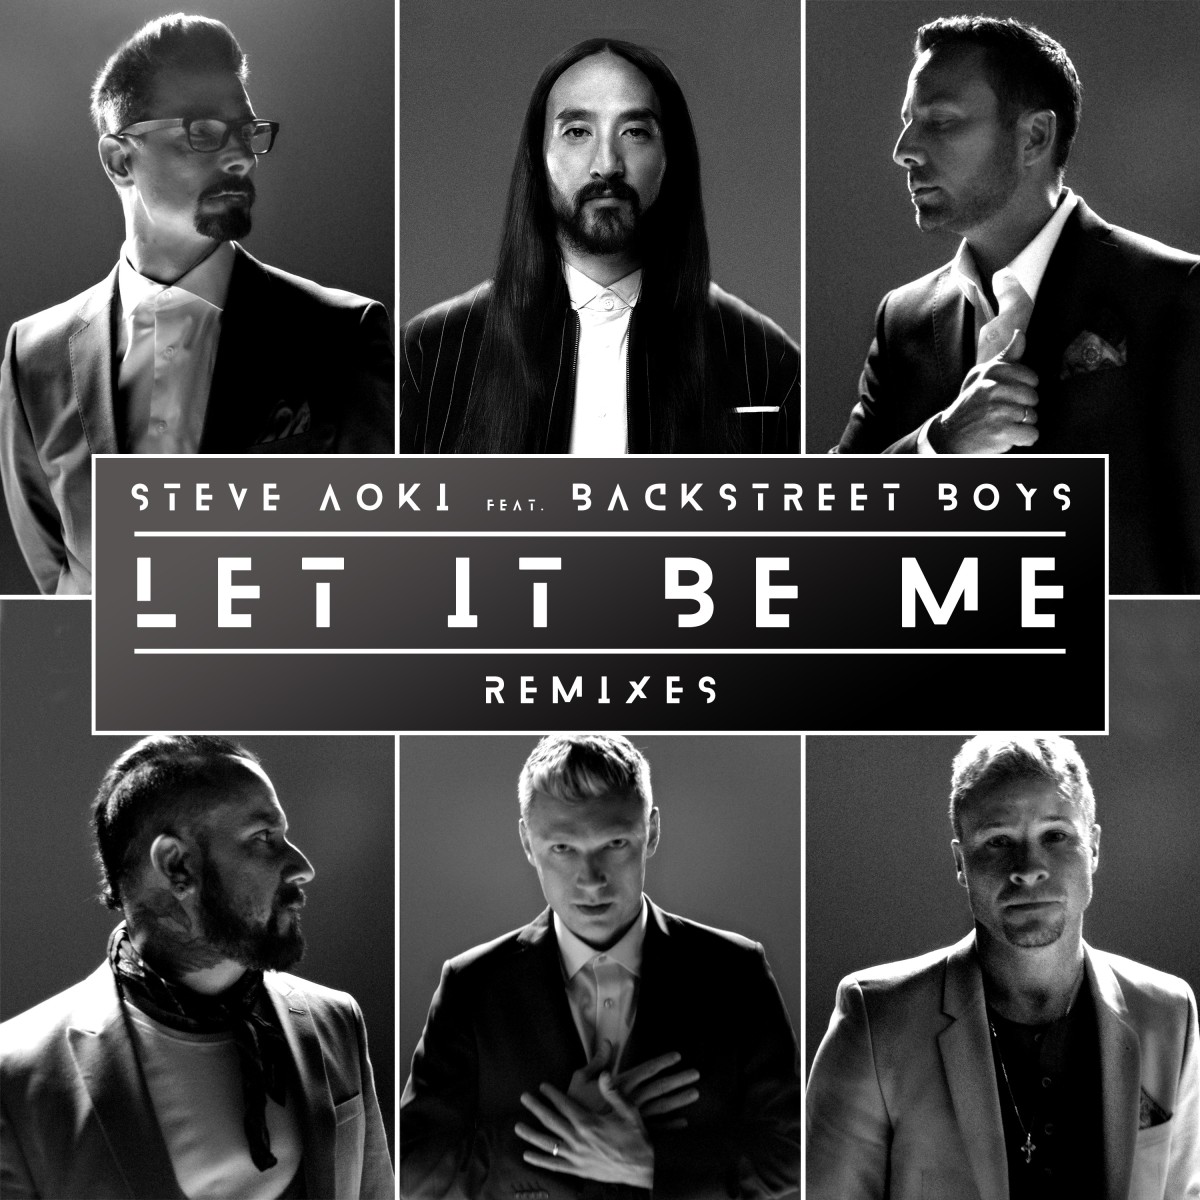 Steve Aoki & Backstreet Boys - Let It Be Me (Remixes) - ALBUM ARTWORK